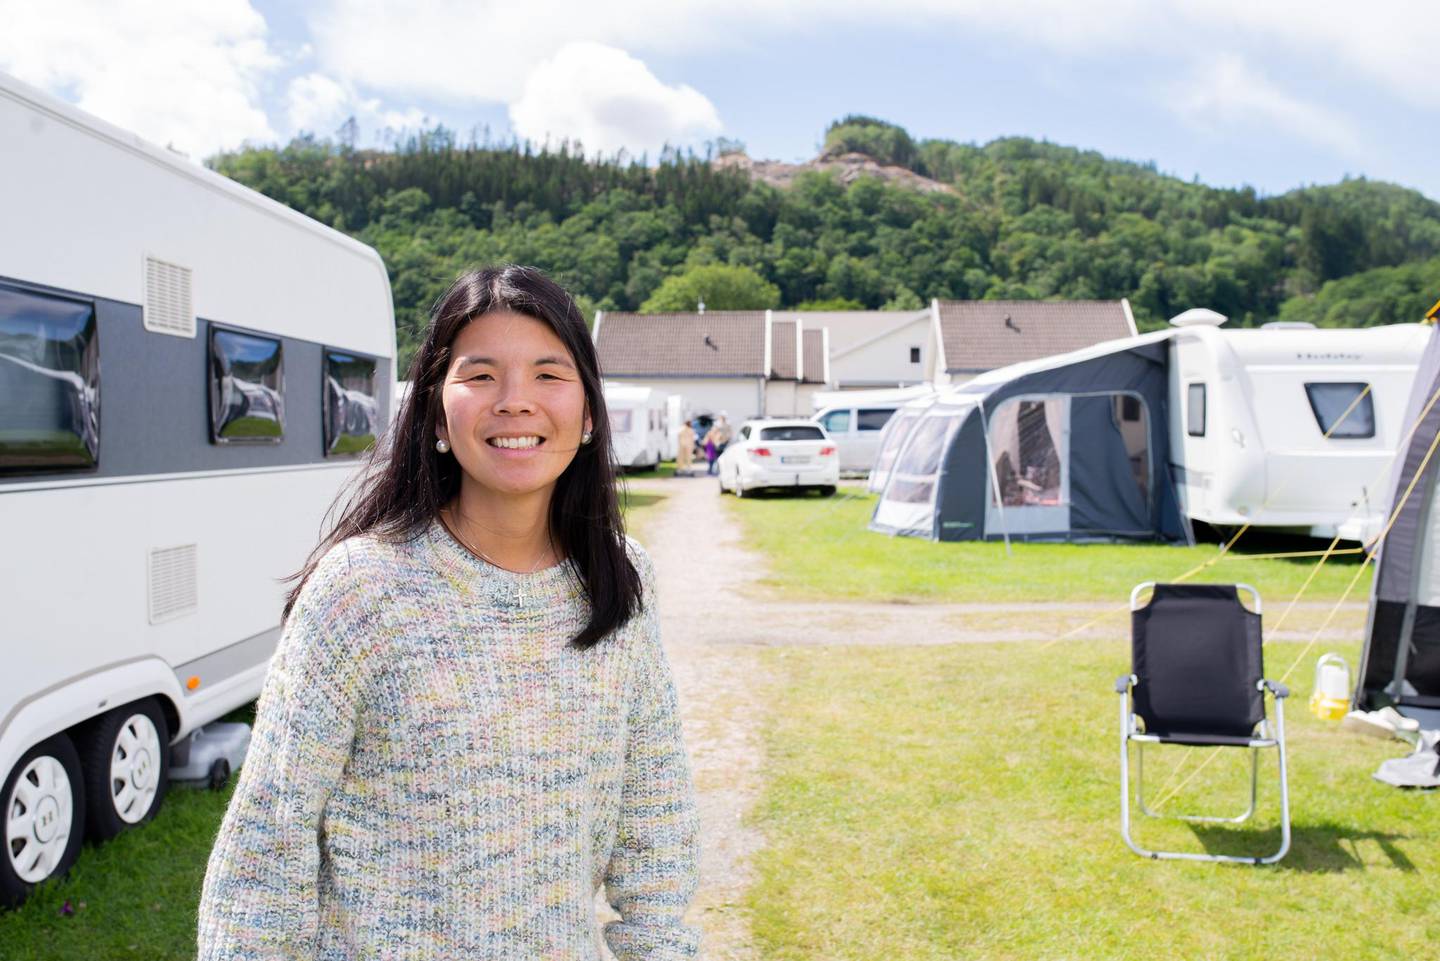 – Folk er takknemlige for at vi fikk til bibelcampen i år, sier Solveig Hosøy, som er en av sommerens leirsjefer.